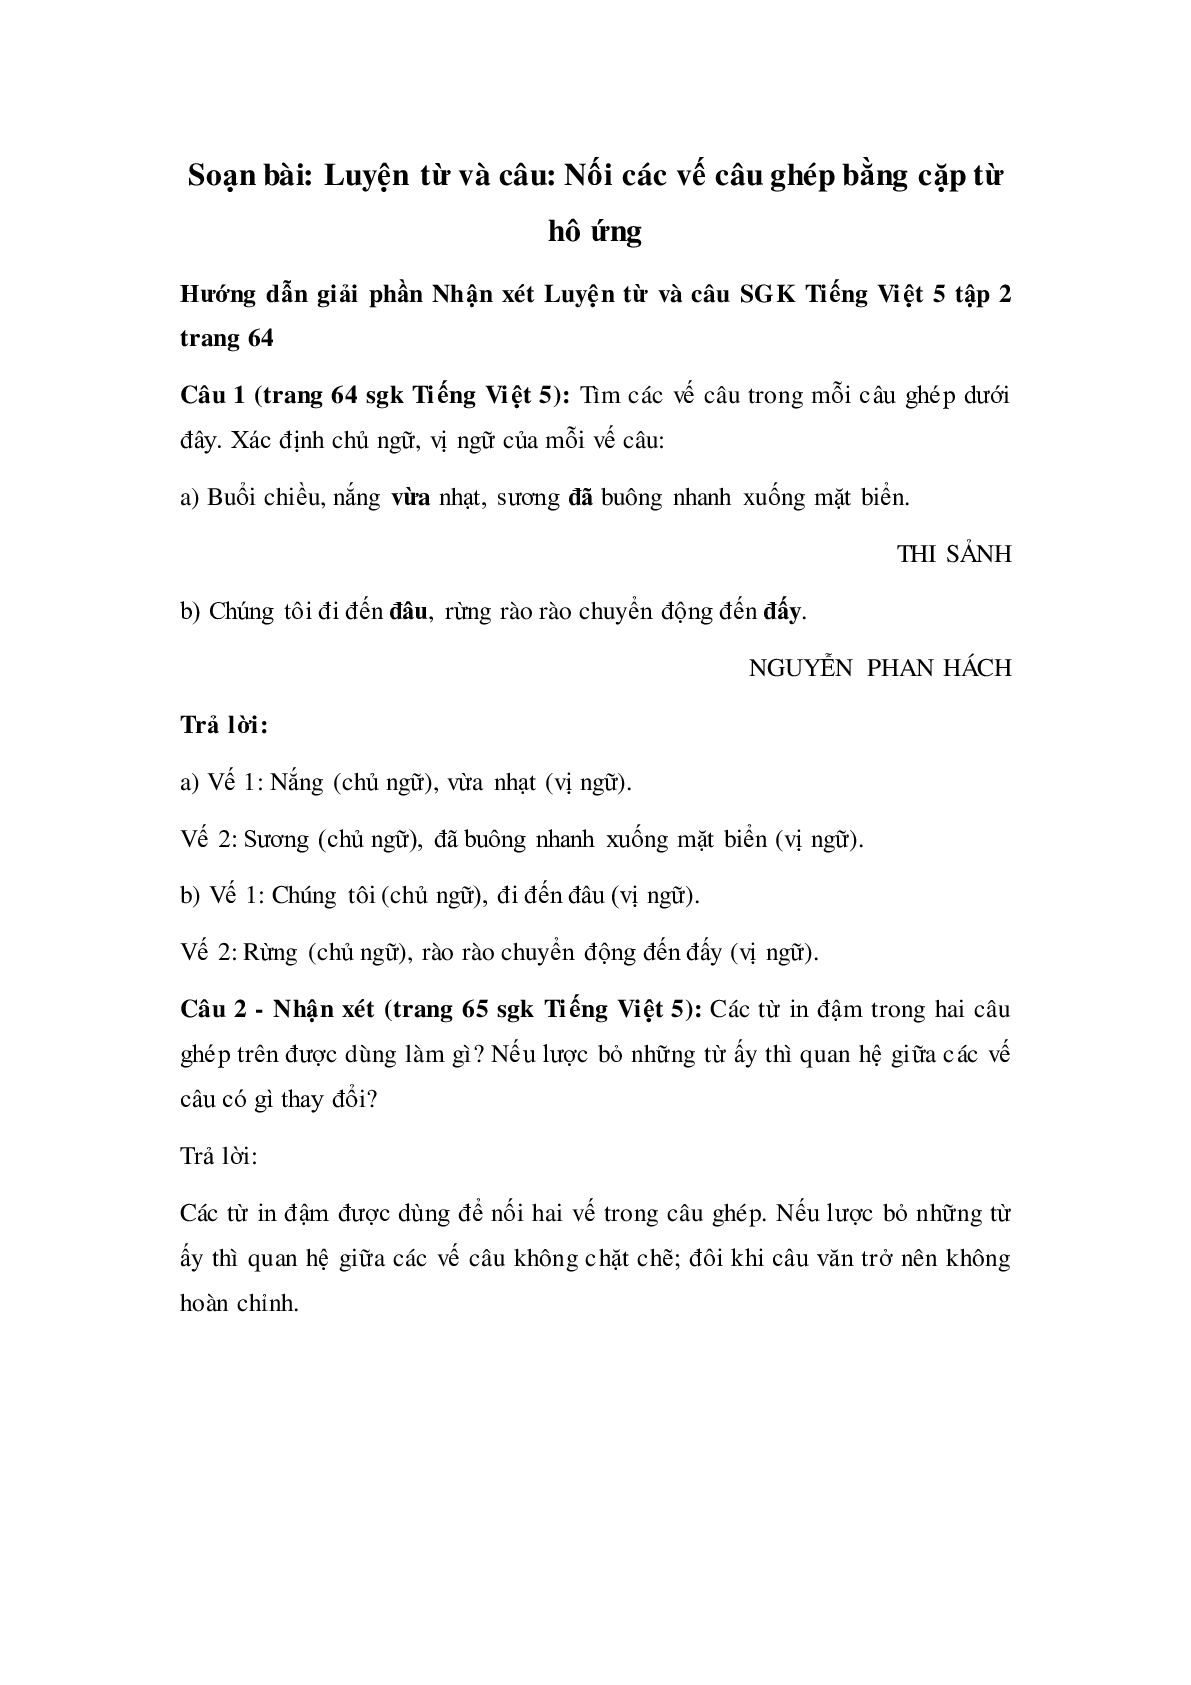 Soạn Tiếng Việt lớp 5: Luyện từ và câu: Nối các vế câu ghép bằng cặp từ hô ứng mới nhất (trang 1)